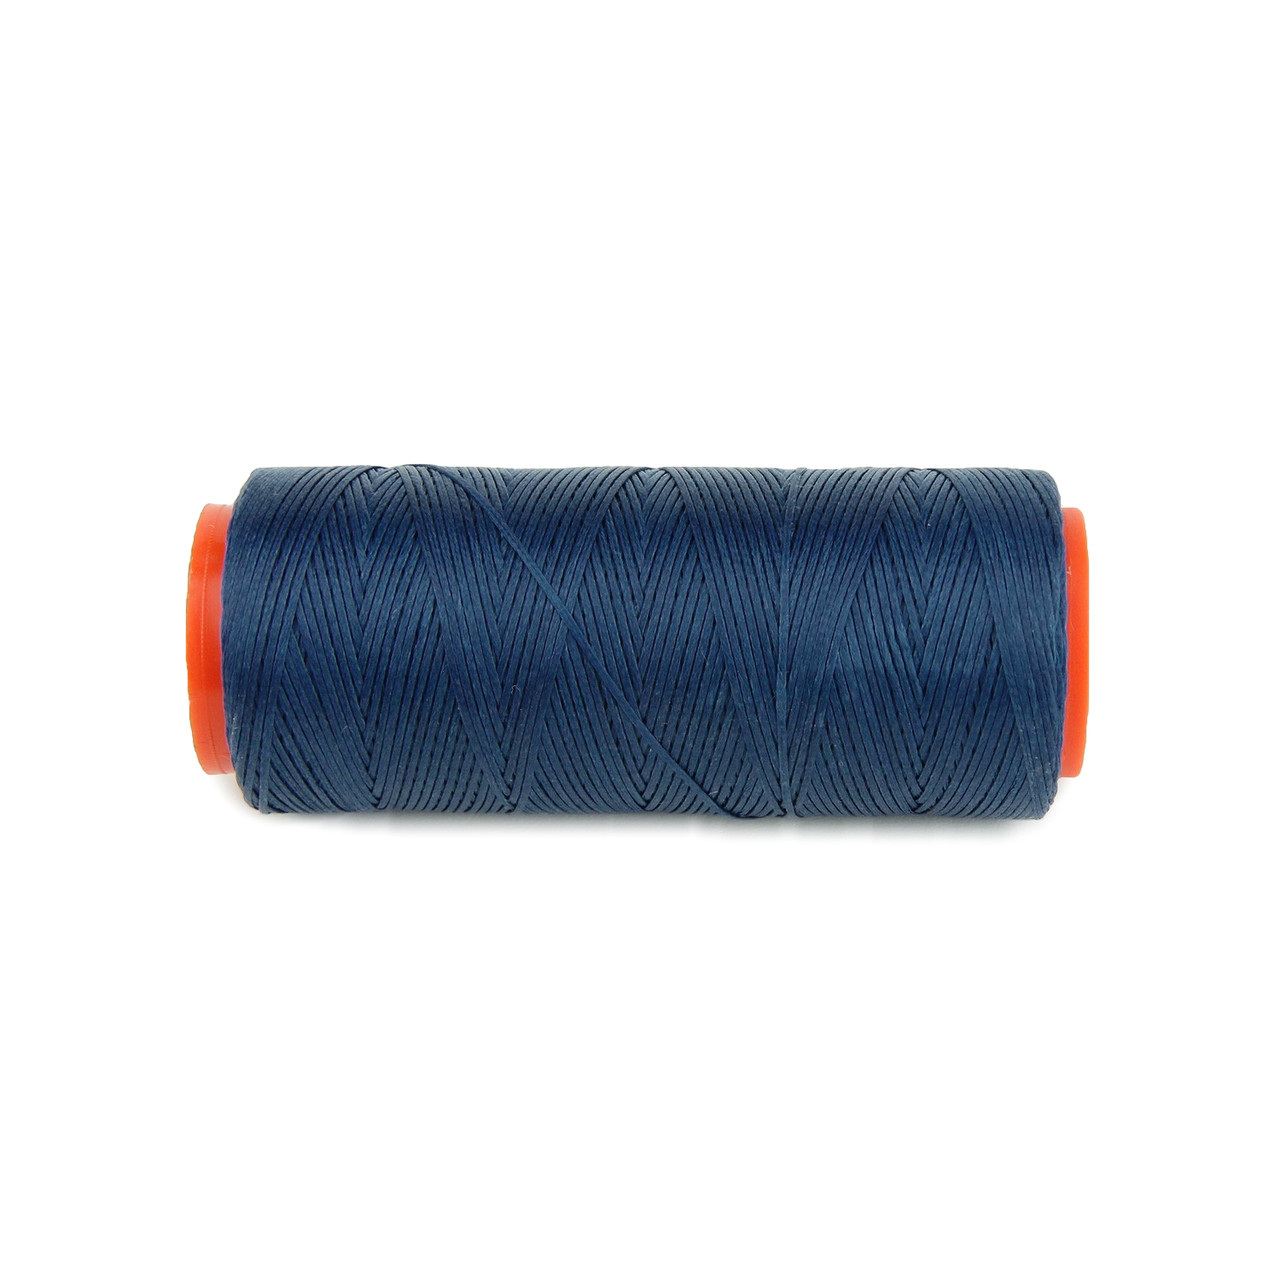 Нитка для перетяжки керма вощеная (синій колір 6681), товщина 0.8 мм, довжина 100м детальна фотка